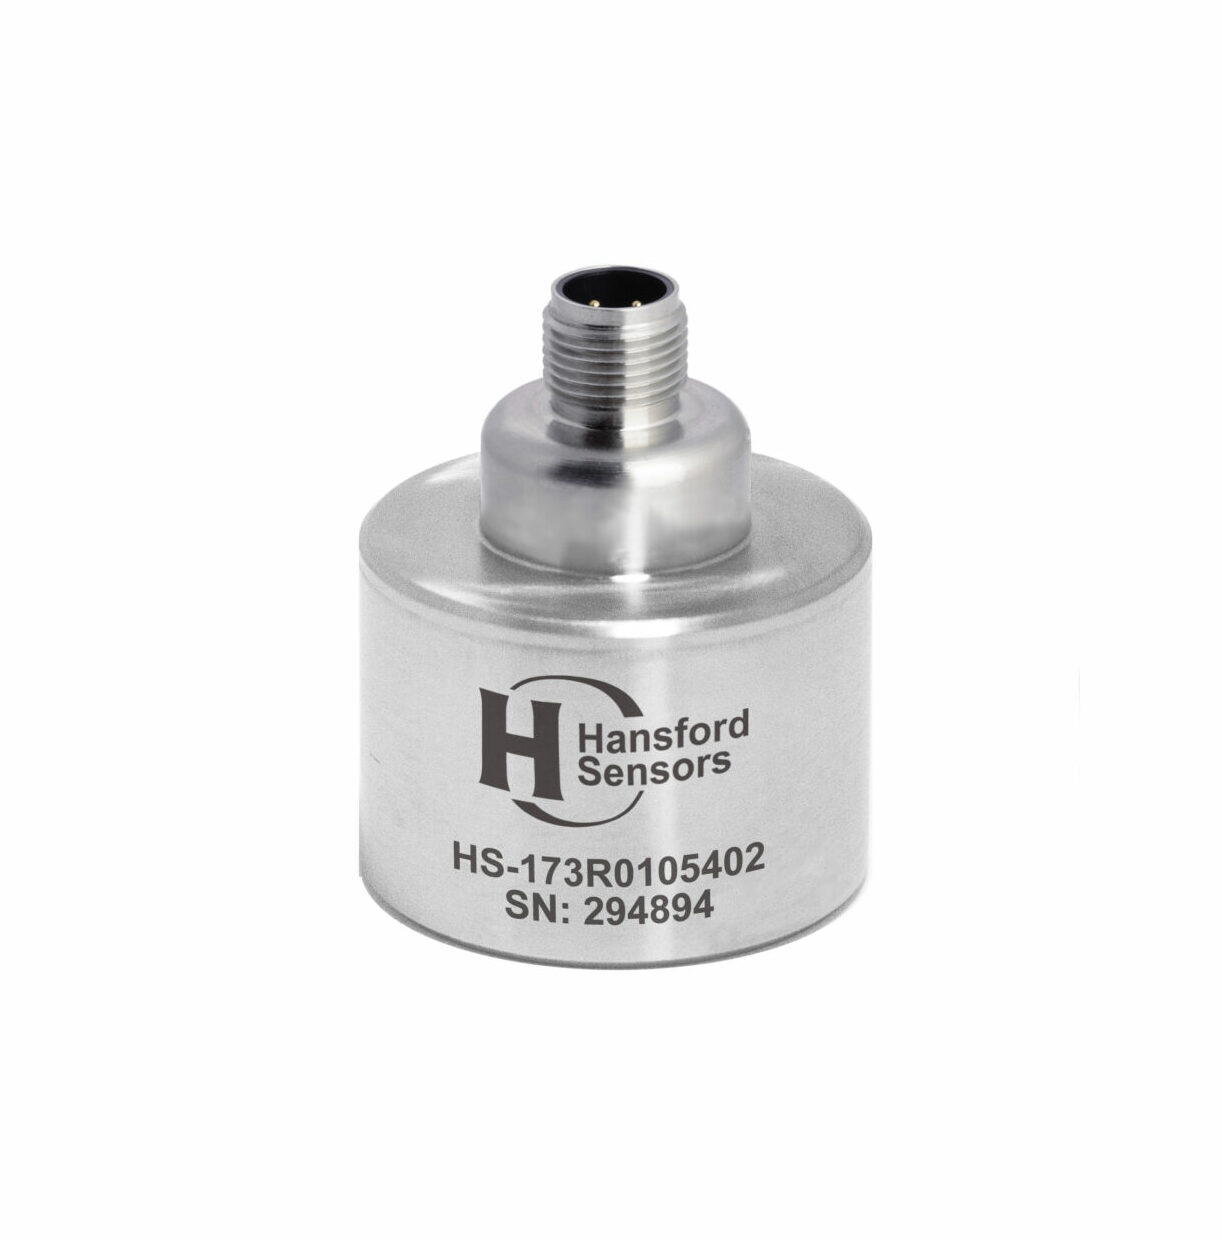 HS-173R0105402 sensor from Hansford Sensors.